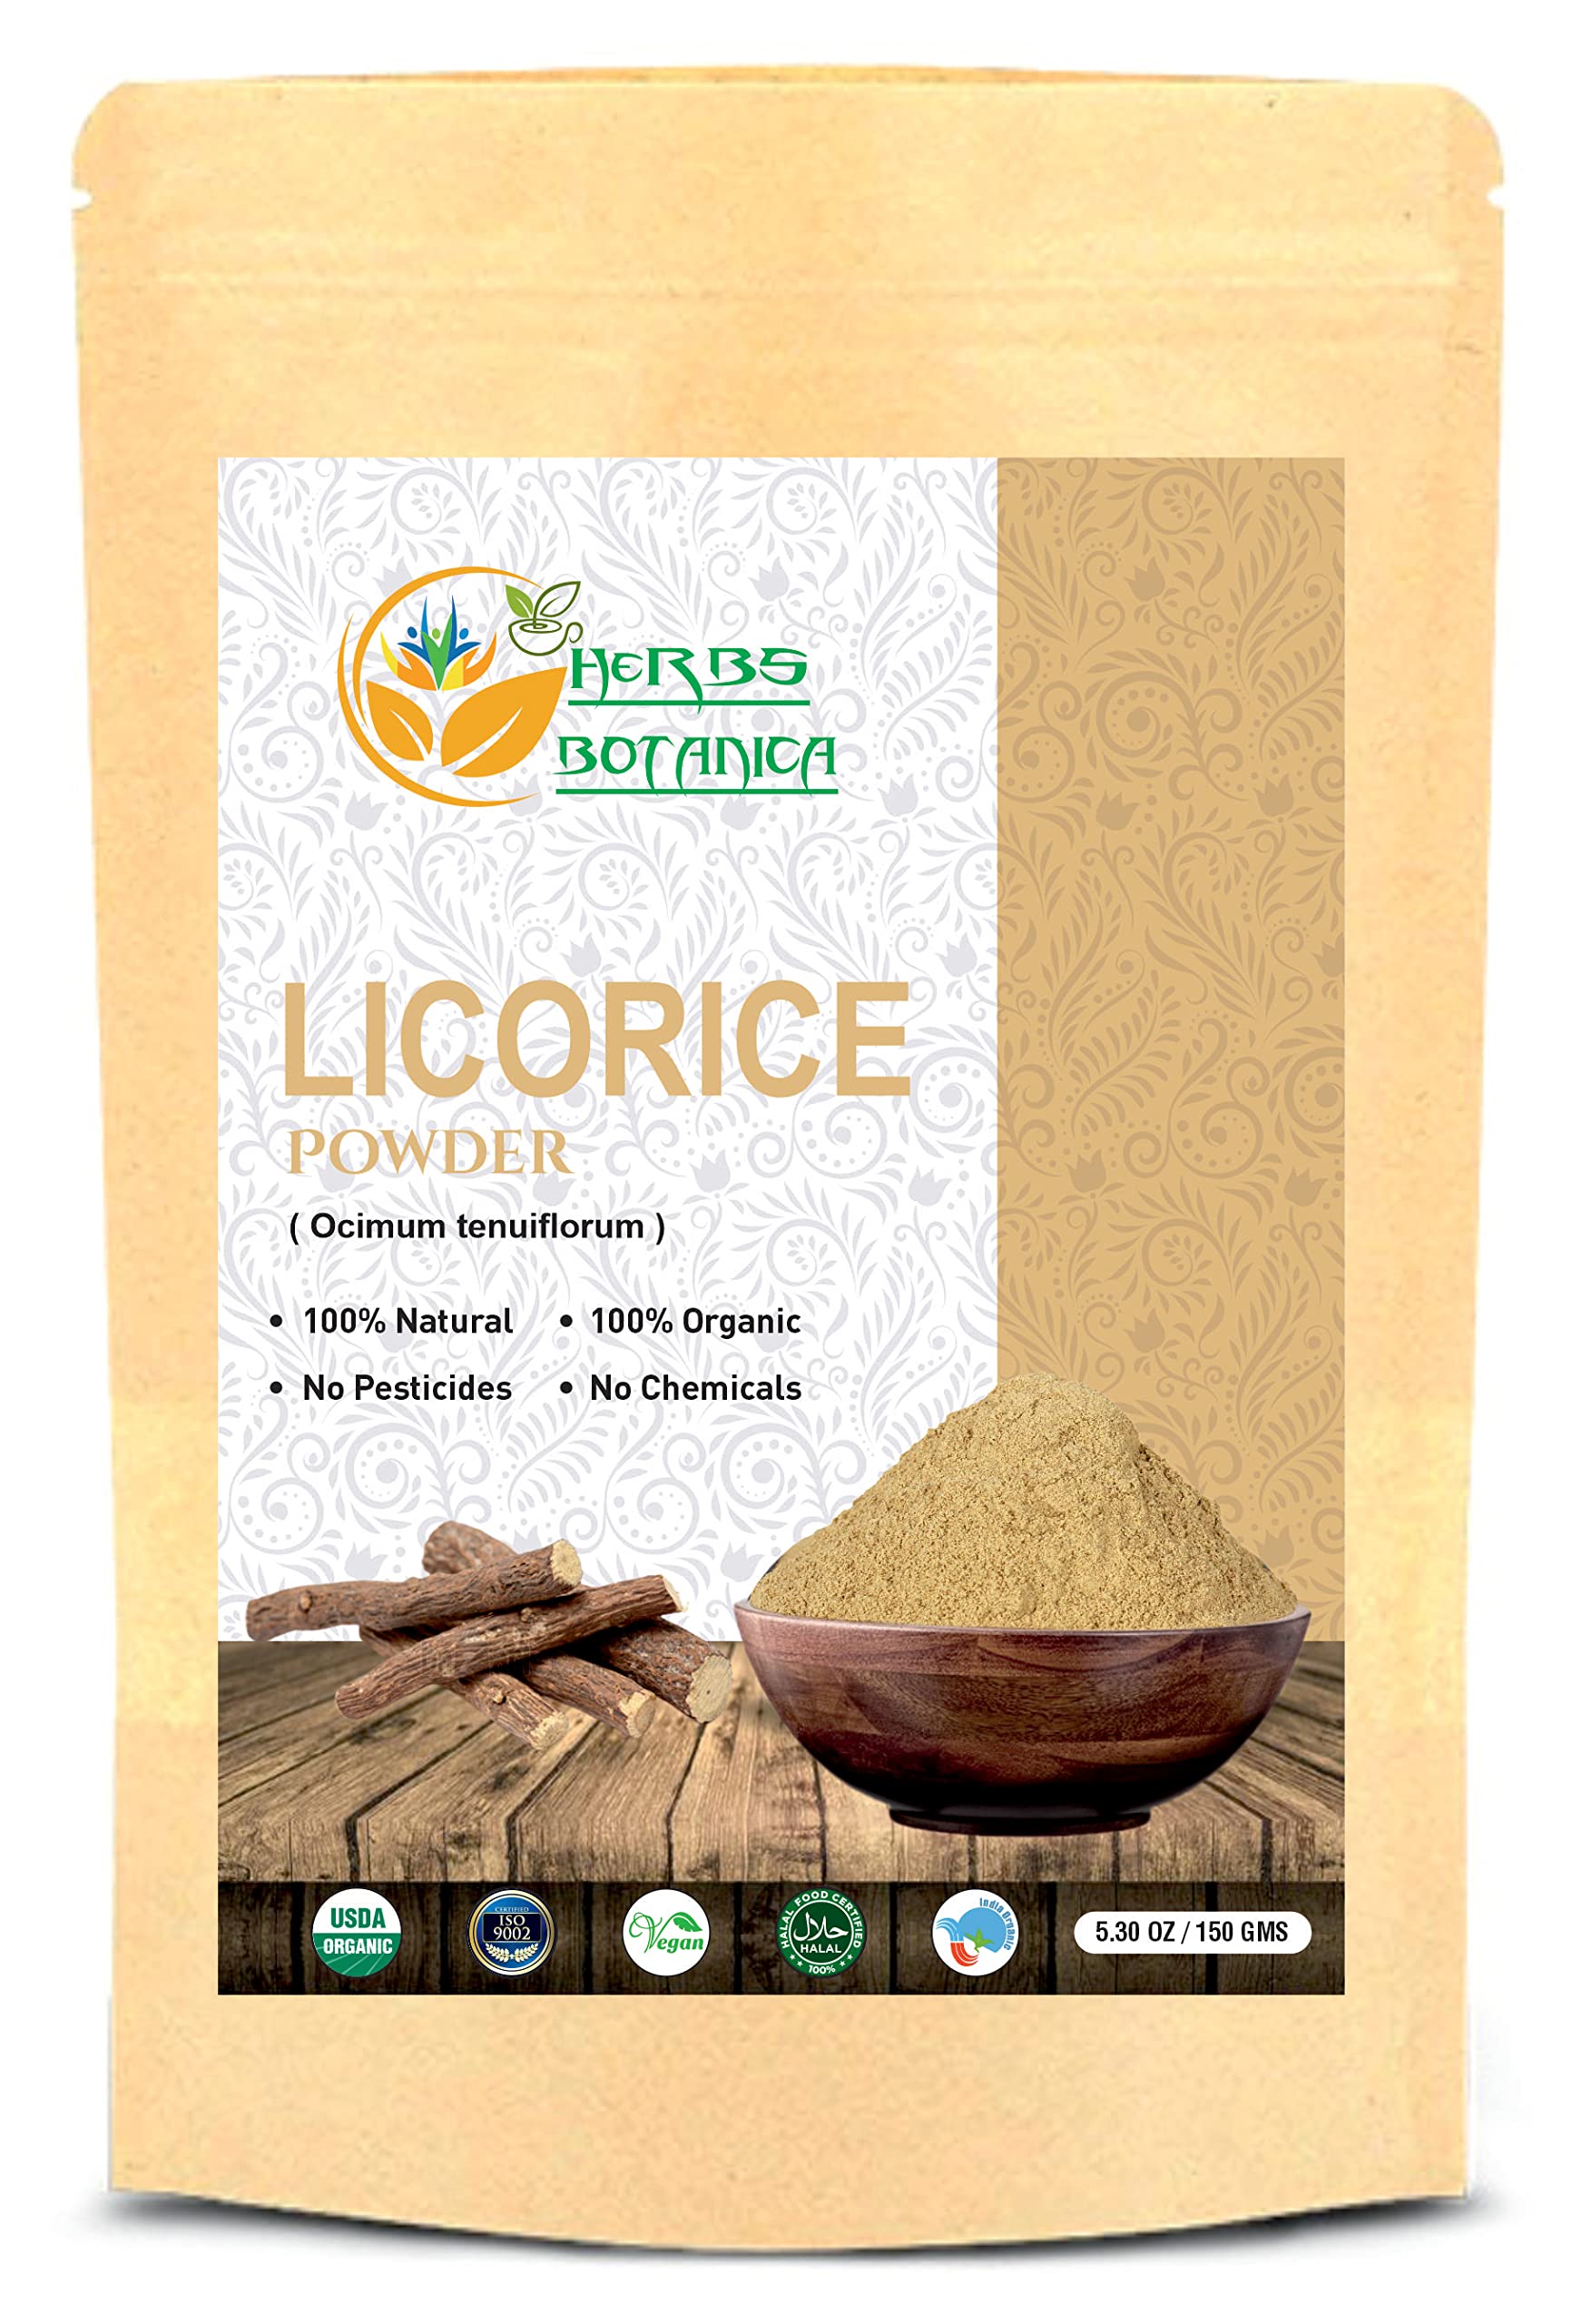 Herbs Botanica 100% Natural Licorice Root Powder Mulethi Powder 5.5 oz / 150gm | Yastimadu Powder (Glycyrrhiza Glabra)